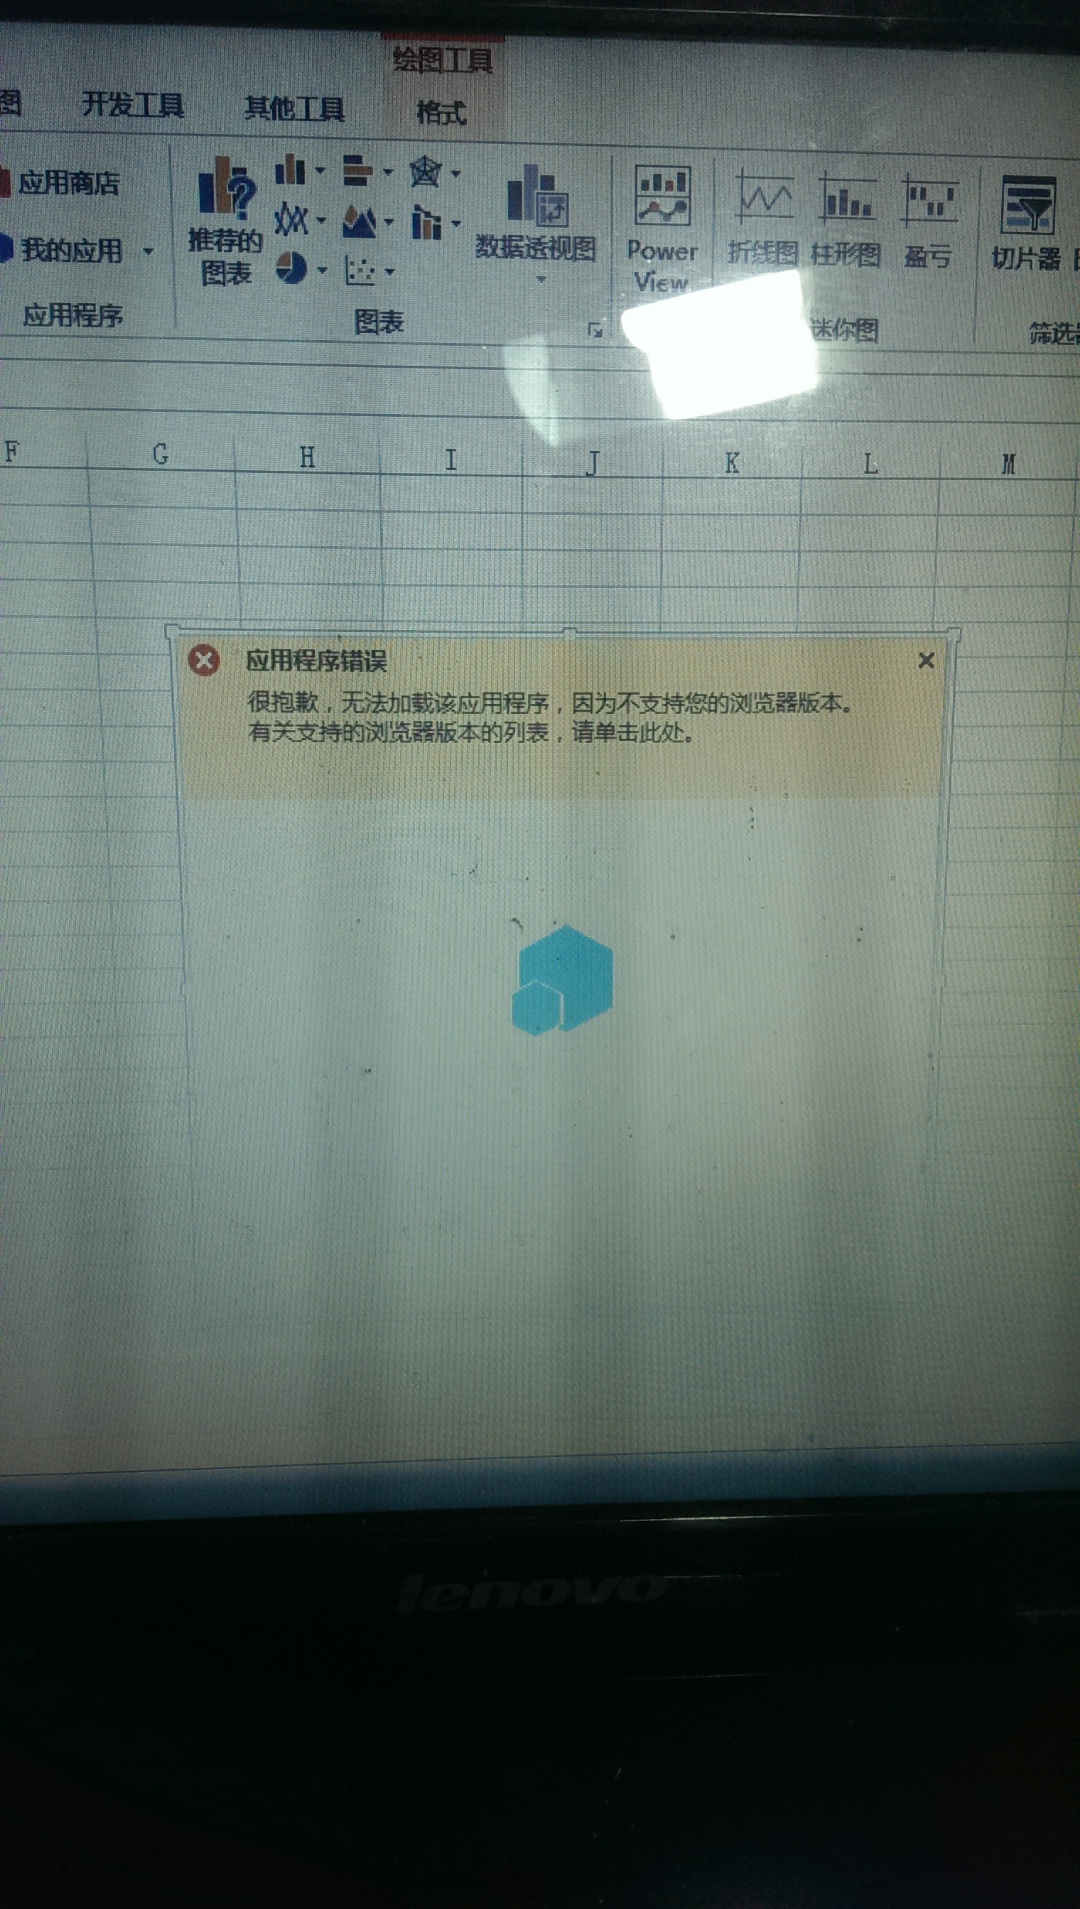 求助!office2013应用程序错误。插入的时候总是